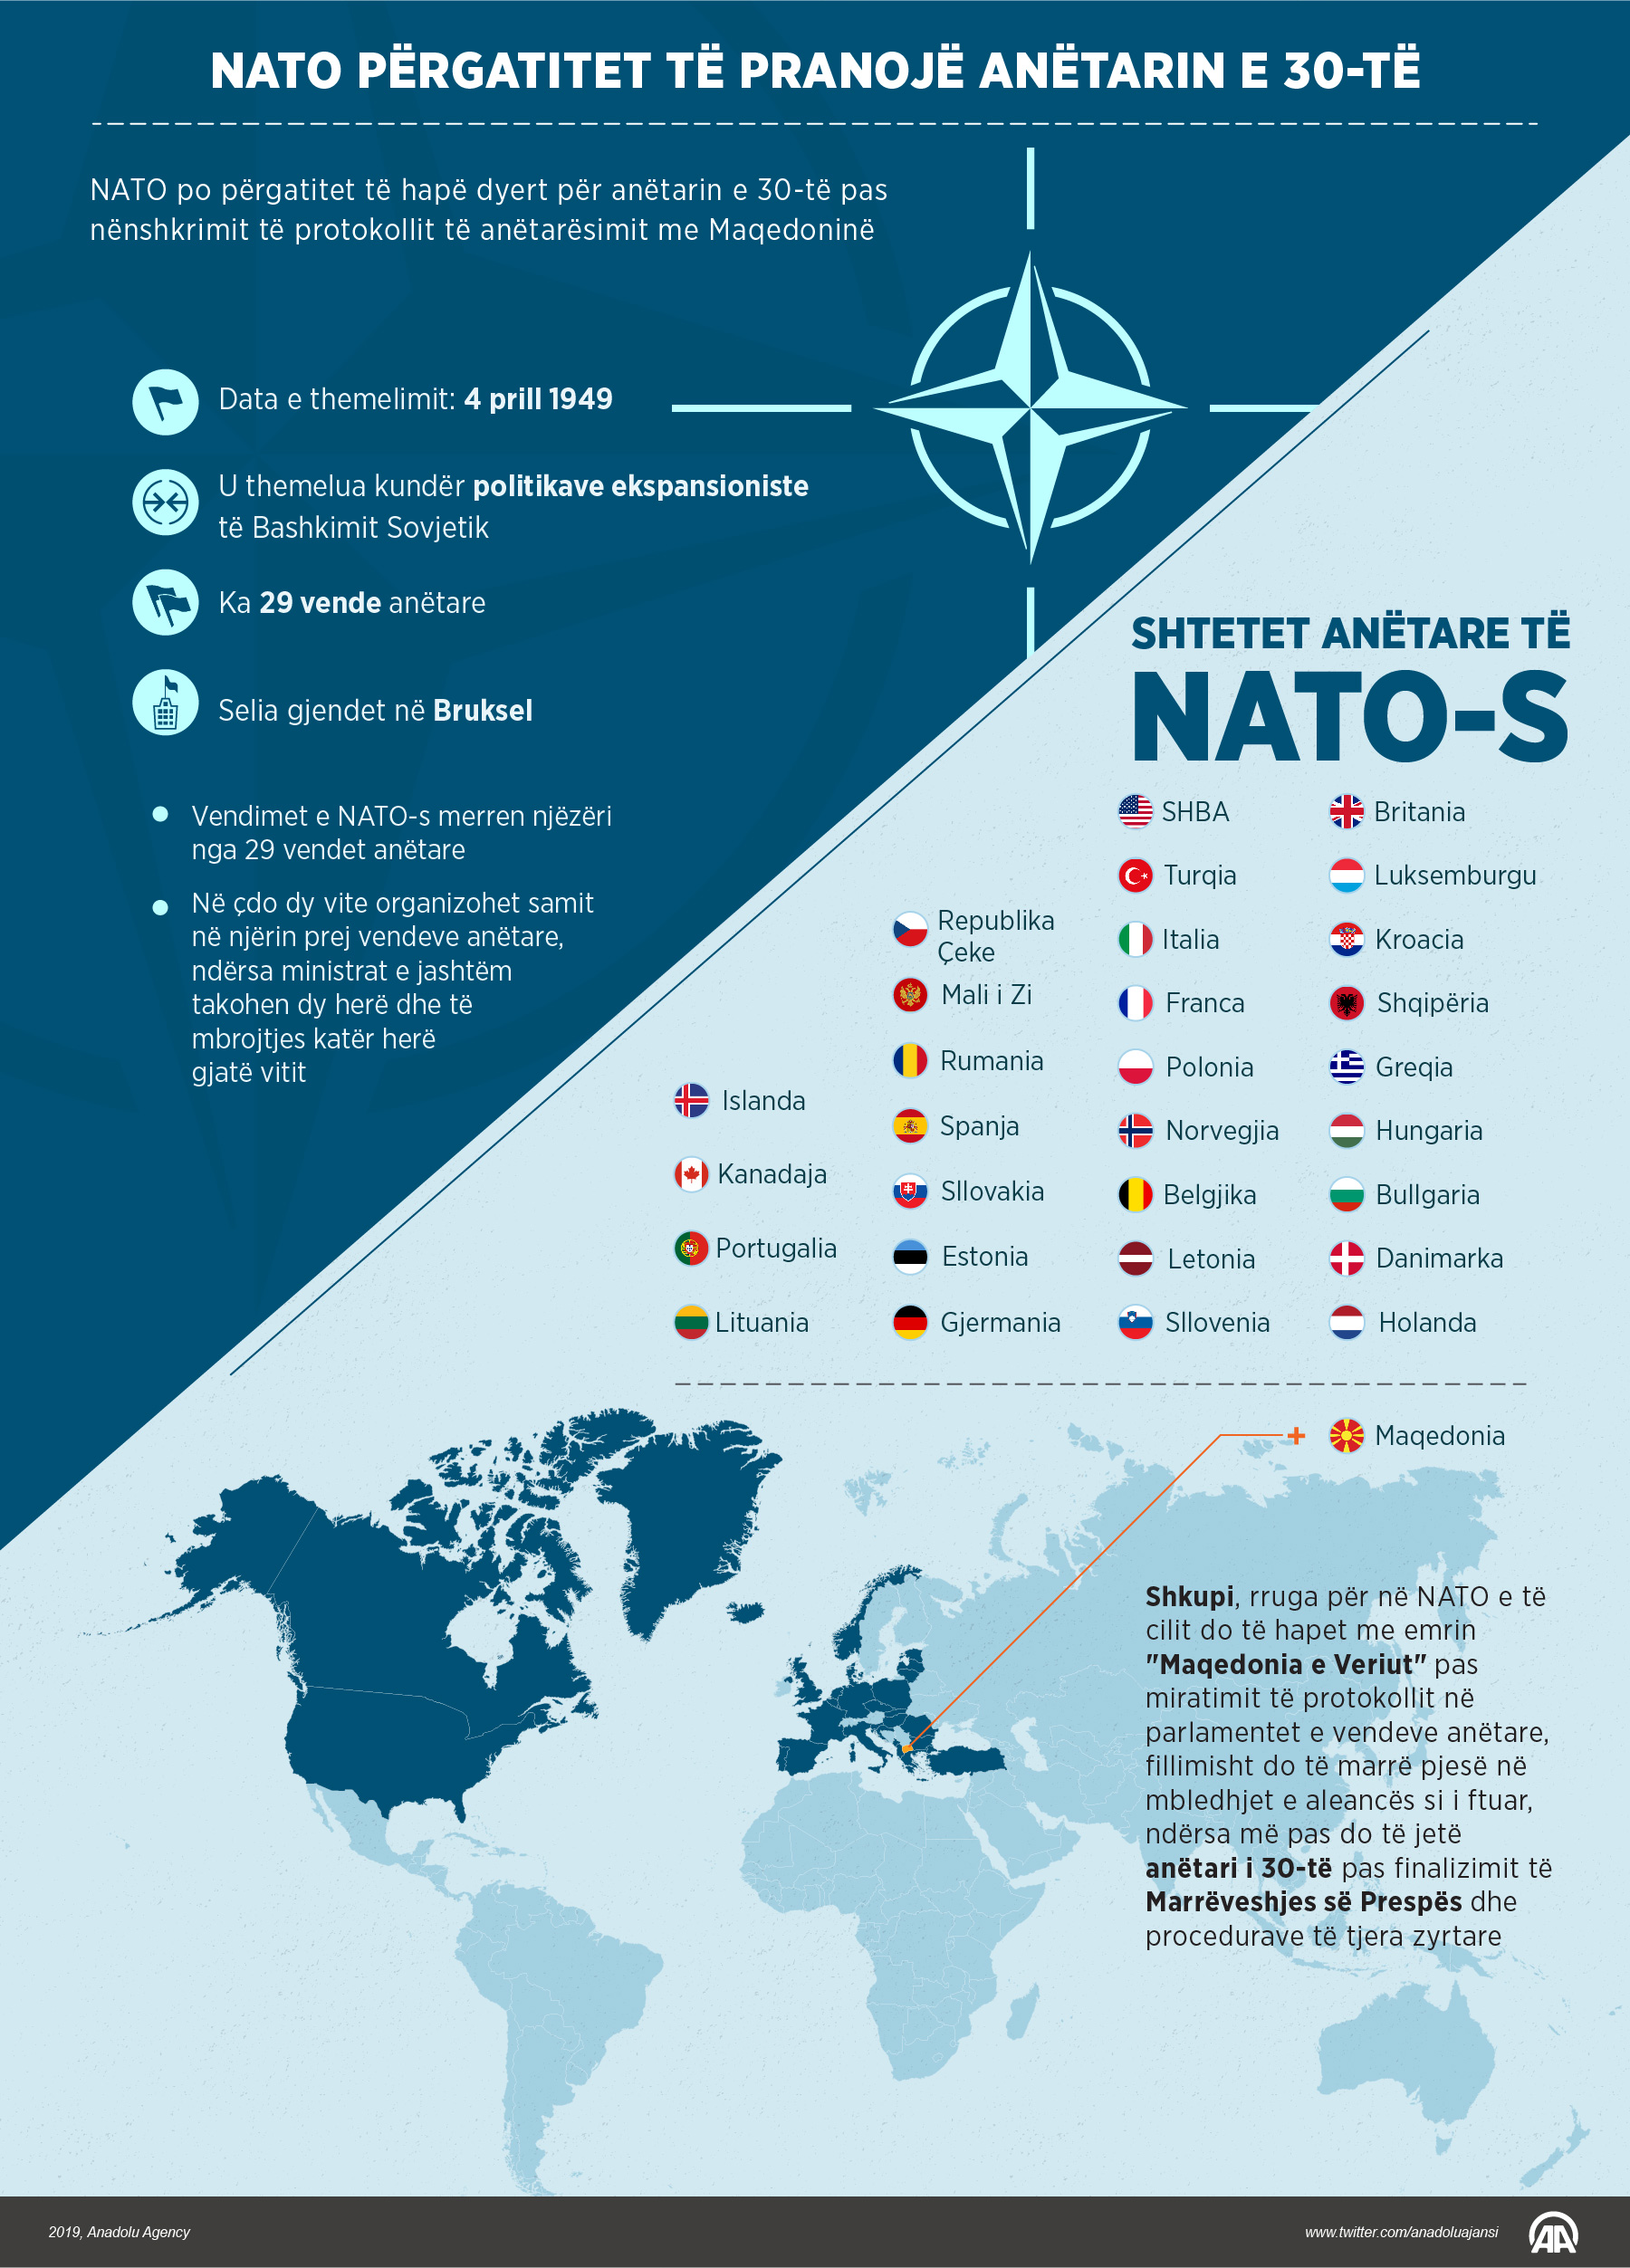 Сколько стран входит в нато на сегодняшний. Какие страны входят в Североатлантический Альянс НАТО. Состав организации Североатлантического договора НАТО. НАТО страны входящие в организацию. Государства блока НАТО.